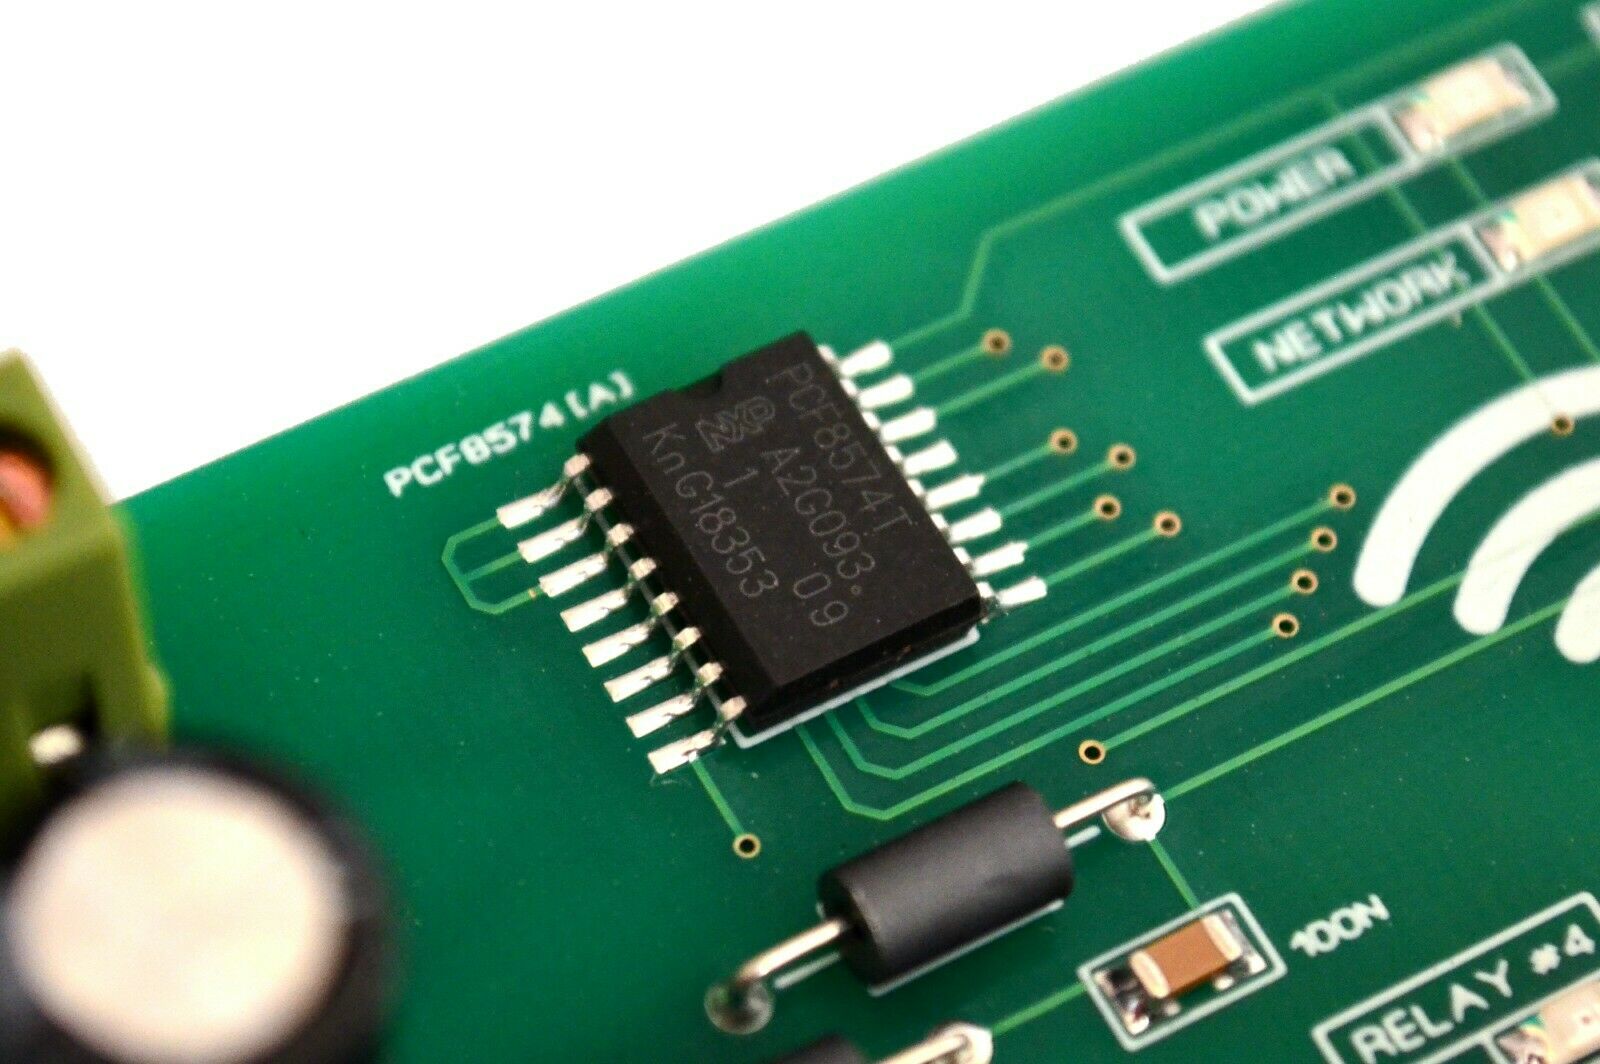 WIFI 8 Channel Electromagnetic Relay Module ESP8266 Arduino Wireless Smart  Home